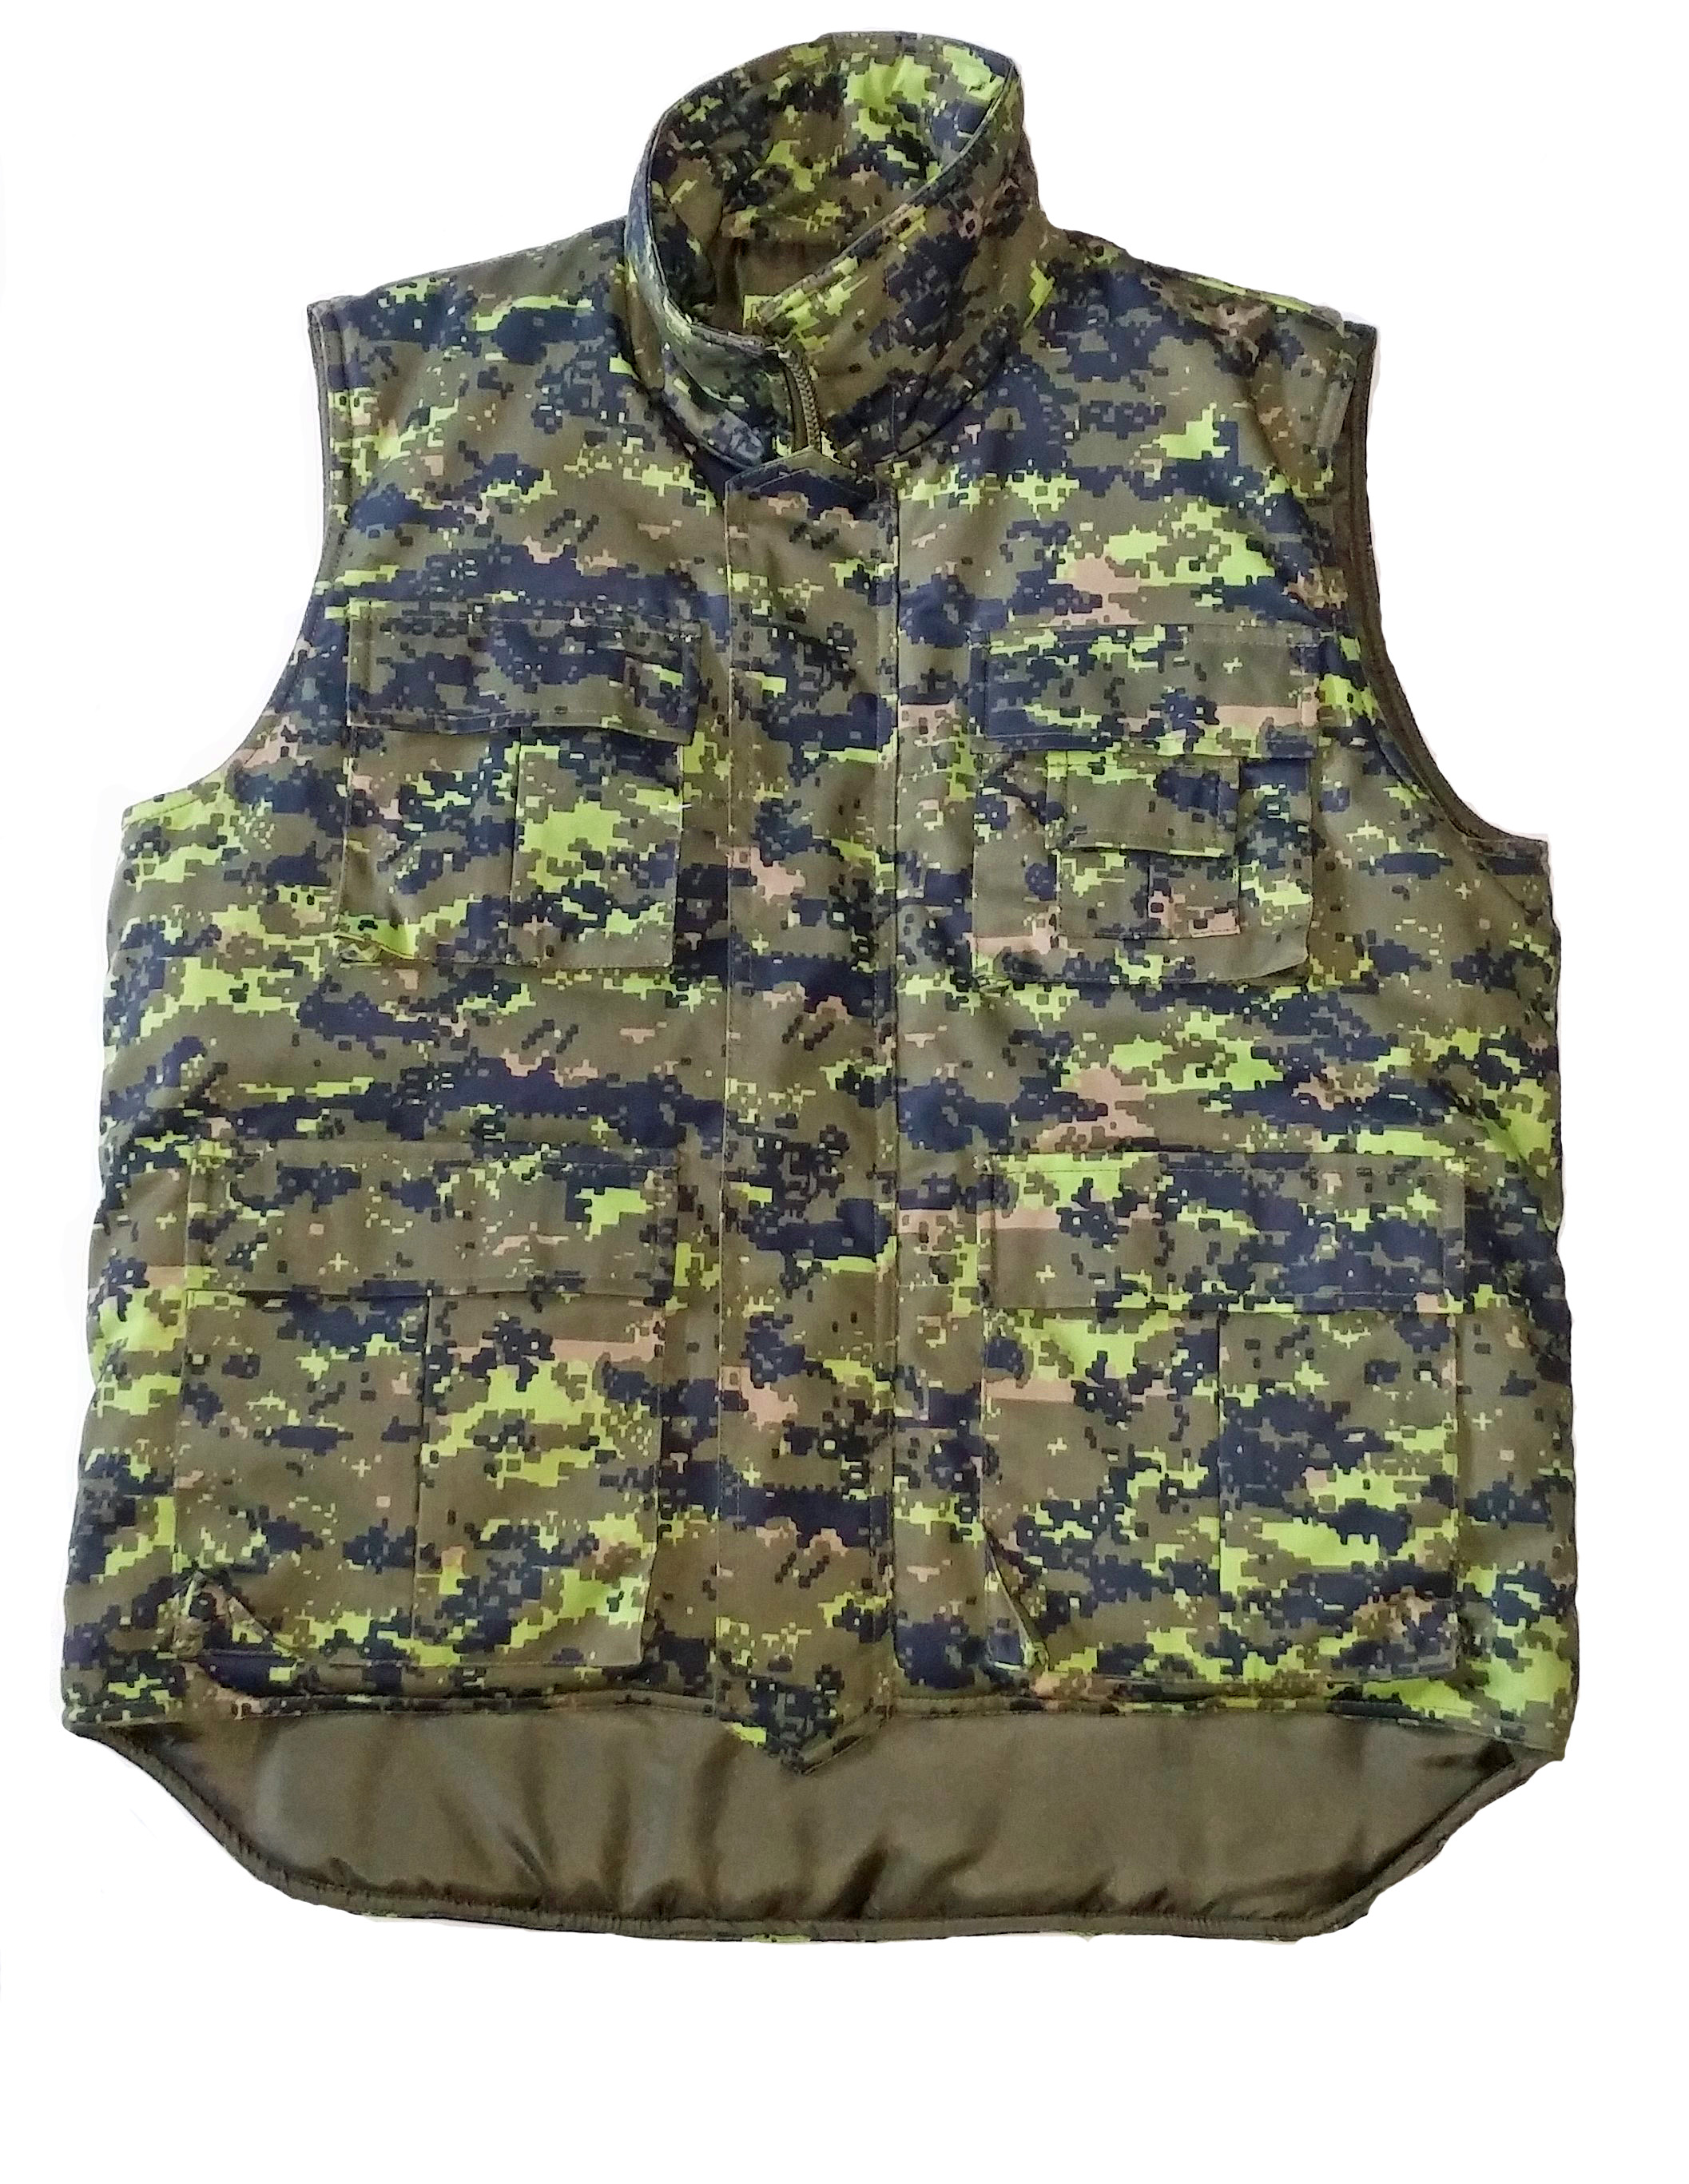 Ranger vest-digital